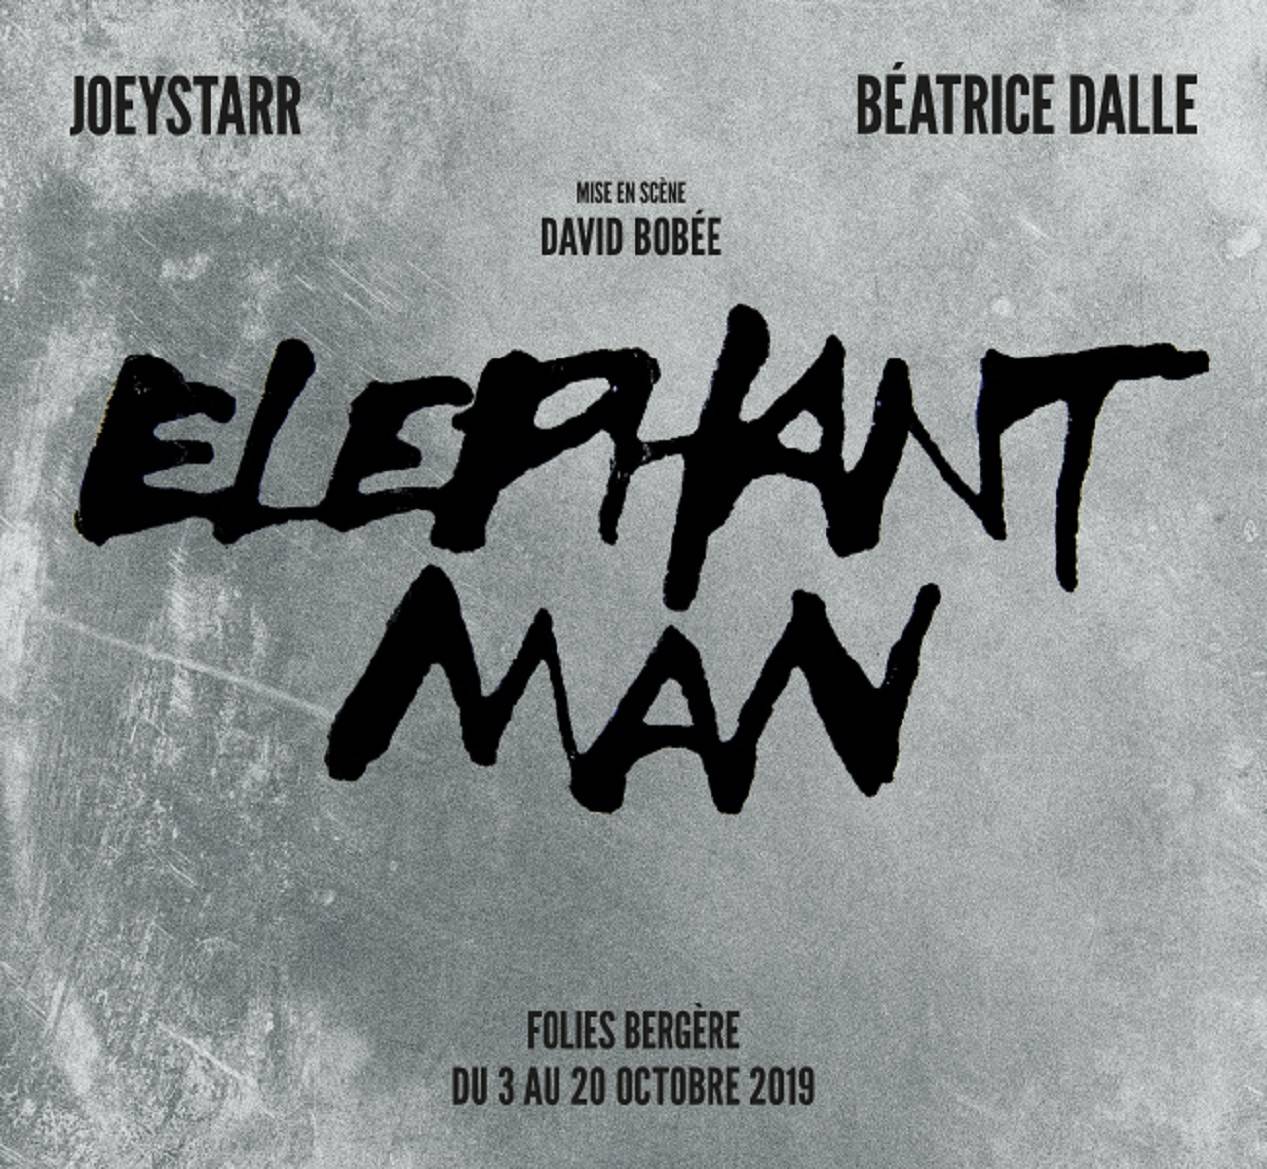 Joeystarr et Béatrice Dalle ressuscitent Elephant Man aux Folies Bergère